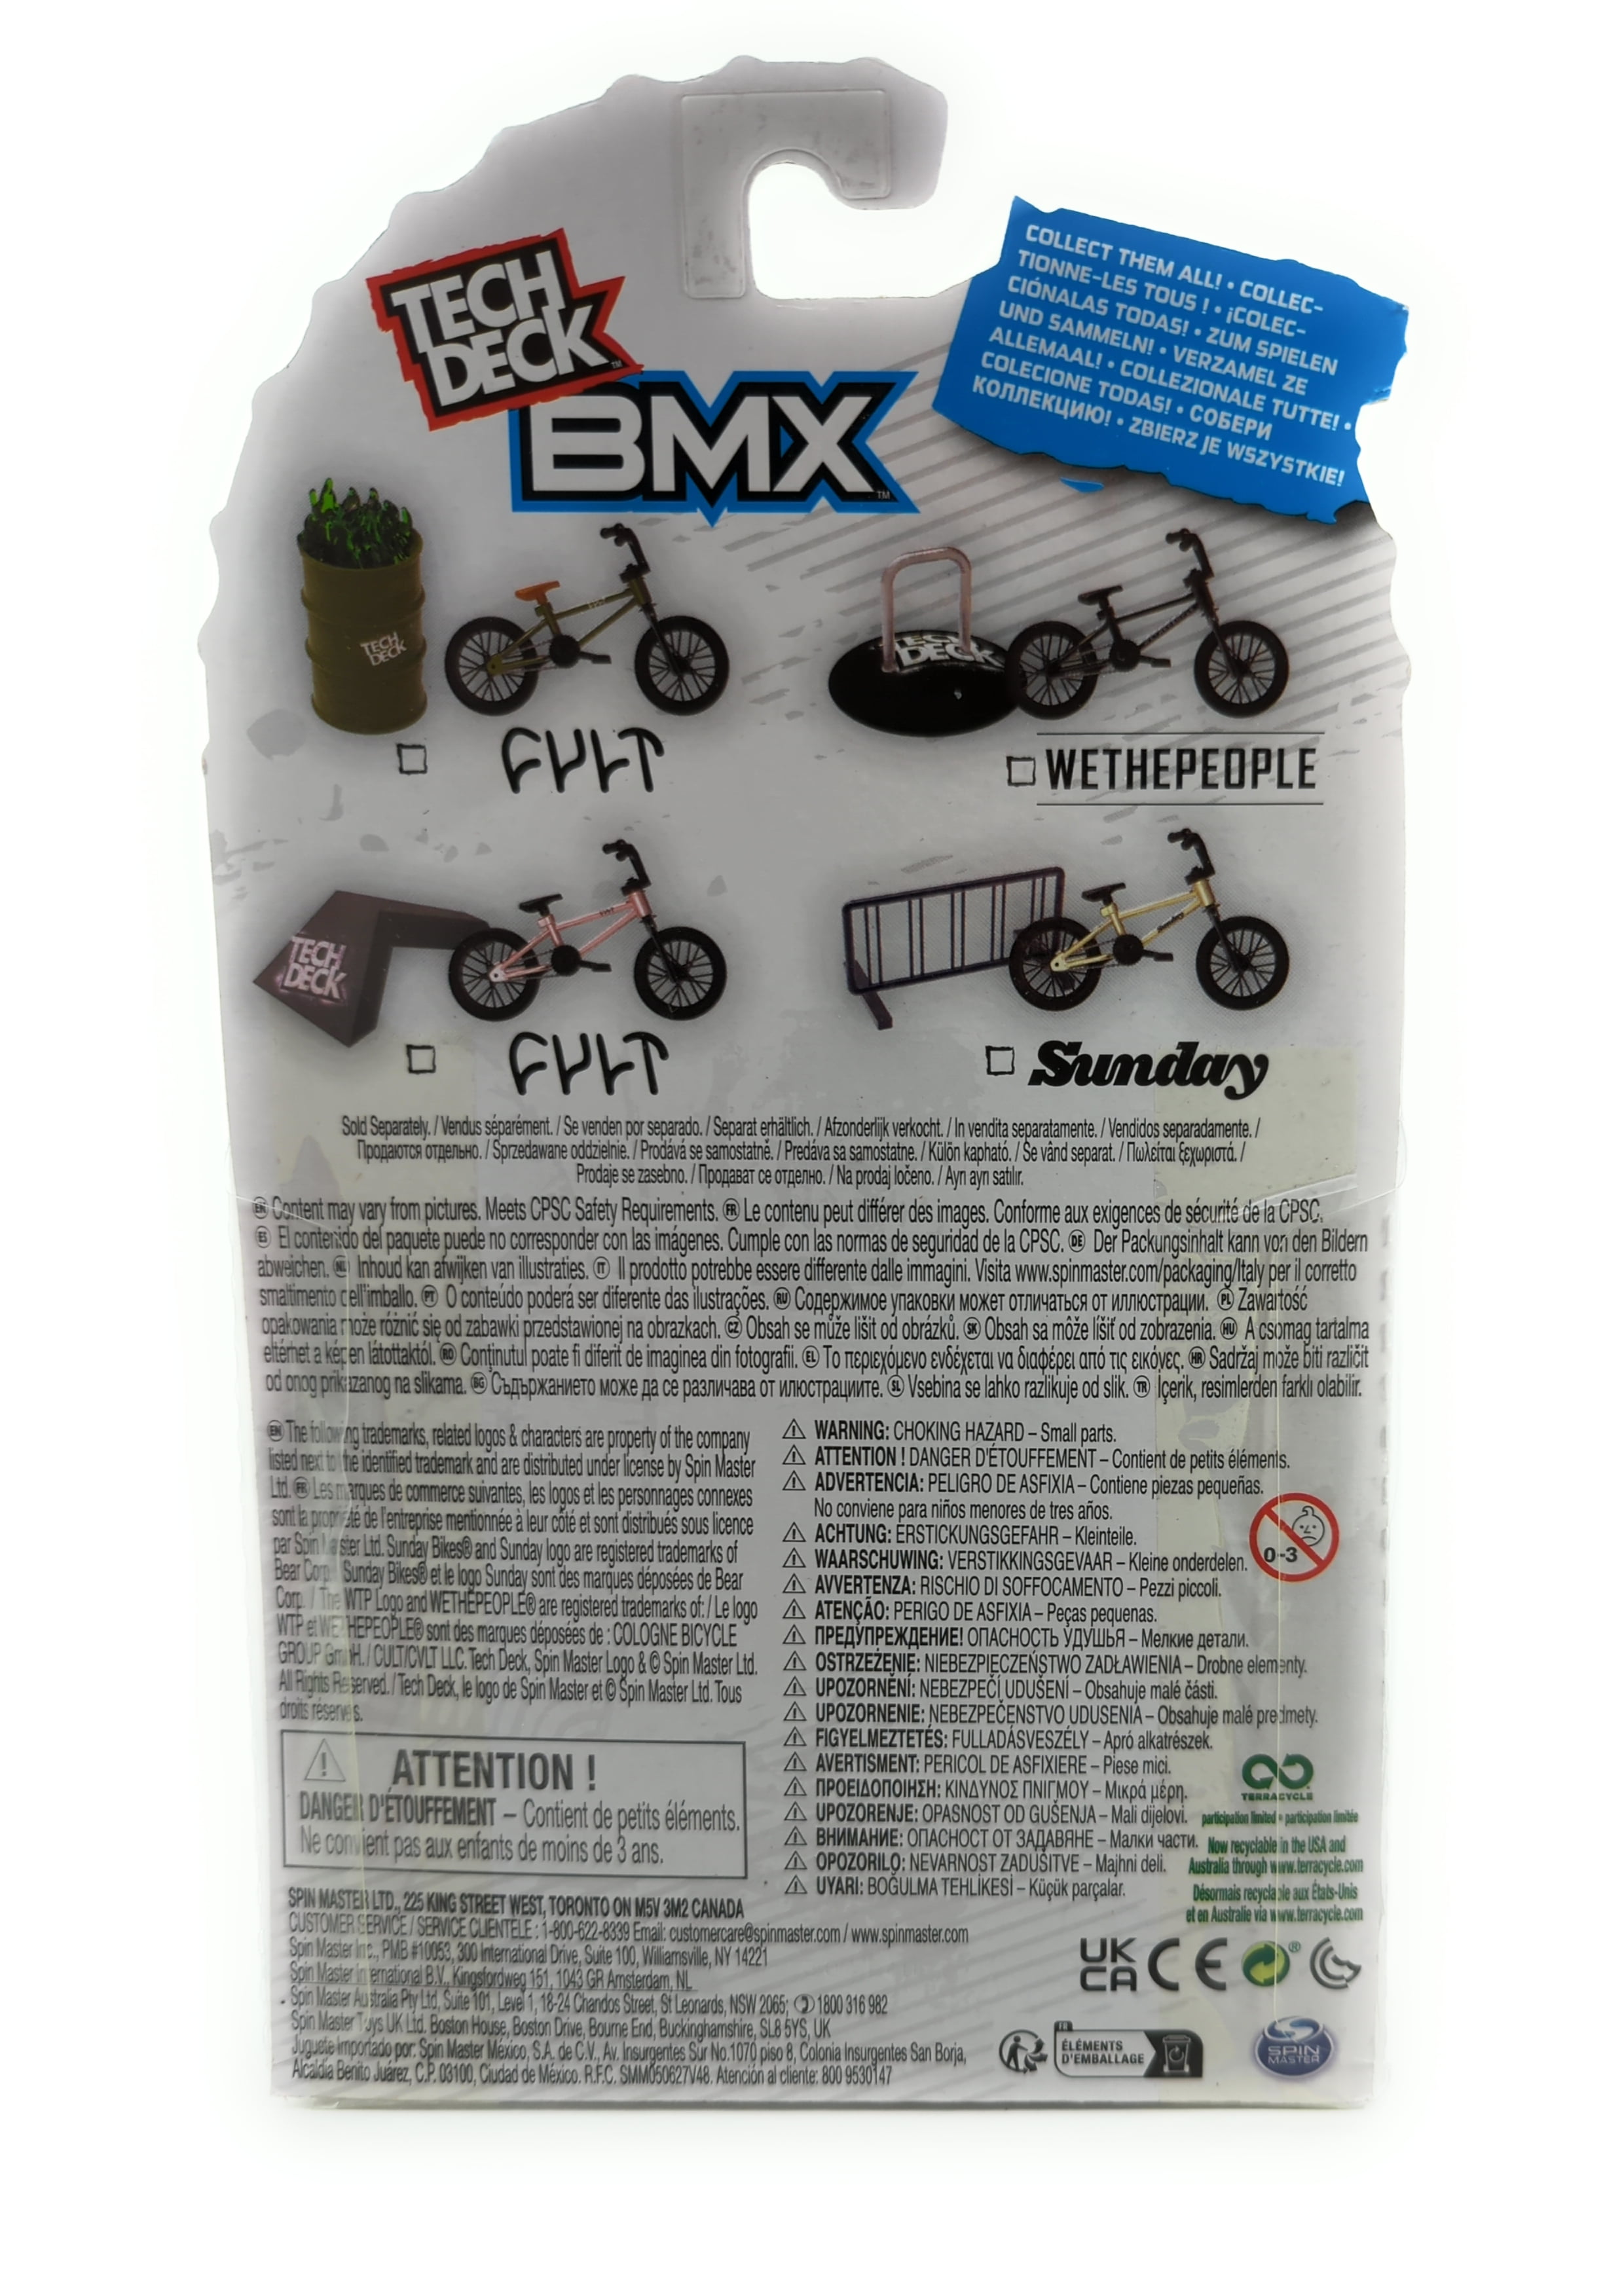 Pack BMX Freestyle hits Tech Deck - La Grande Récré